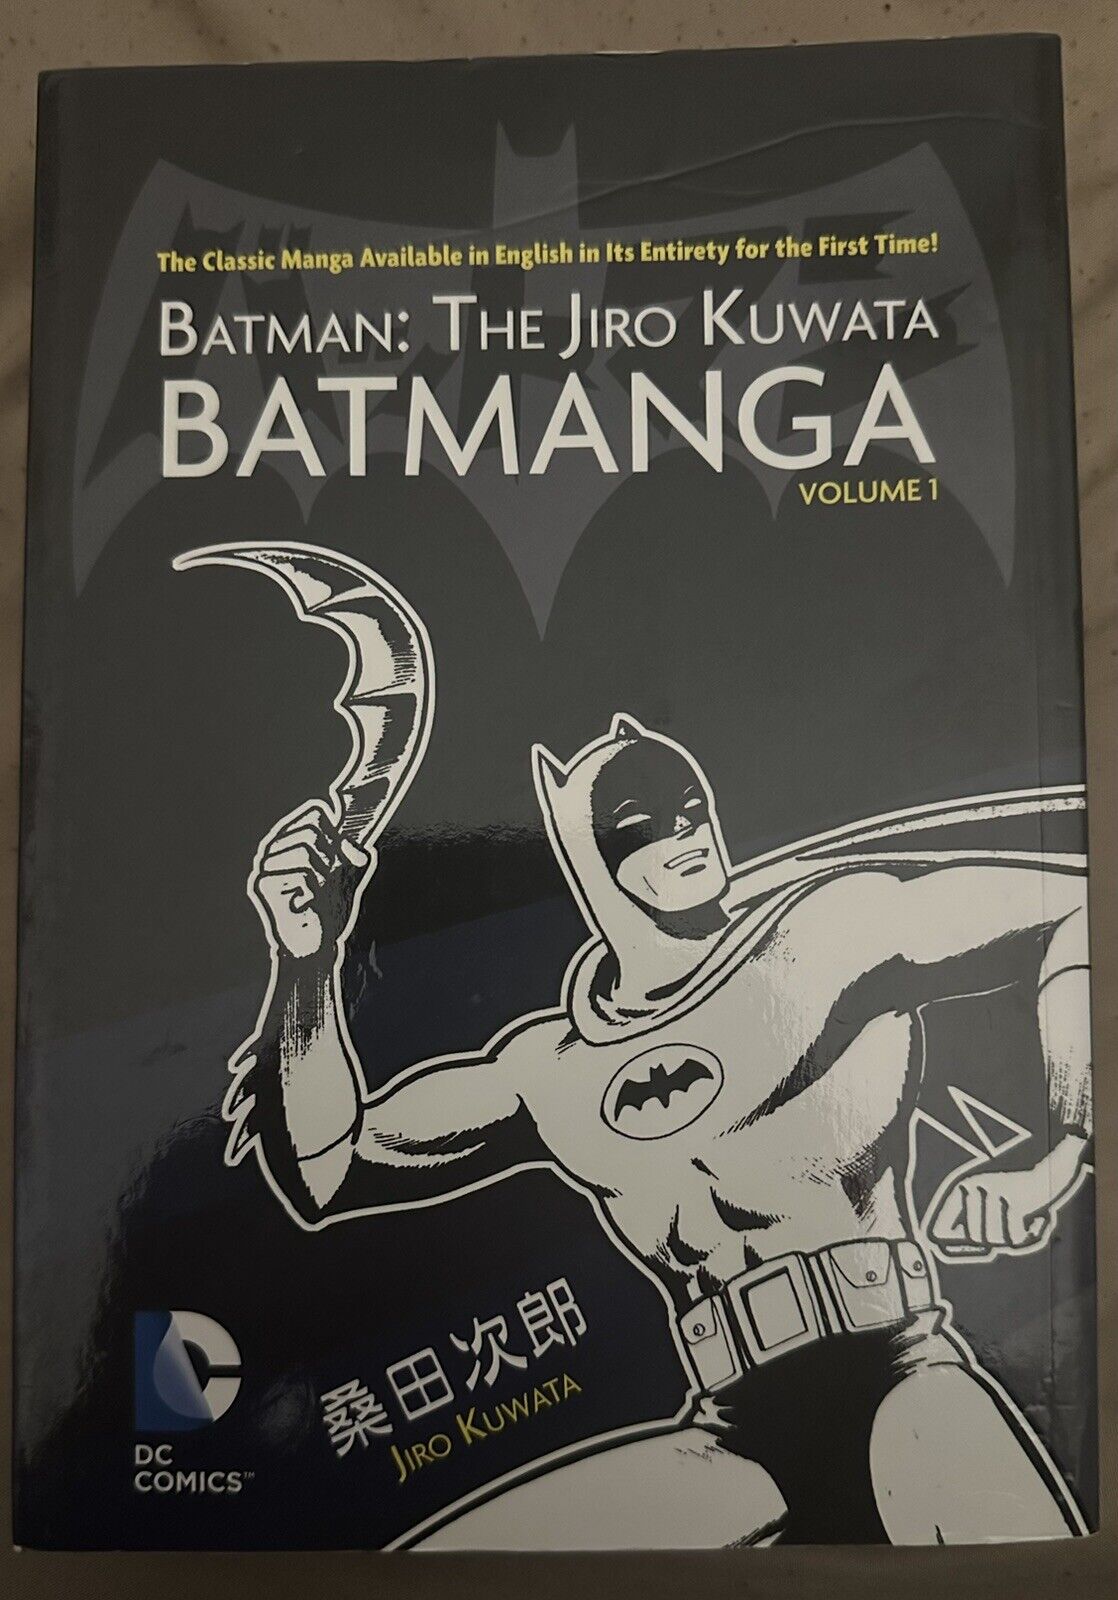 Batman: The Jiro Kuwata Batmanga Vol. 1 - Paperback By Kuwata, Jiro - GOOD